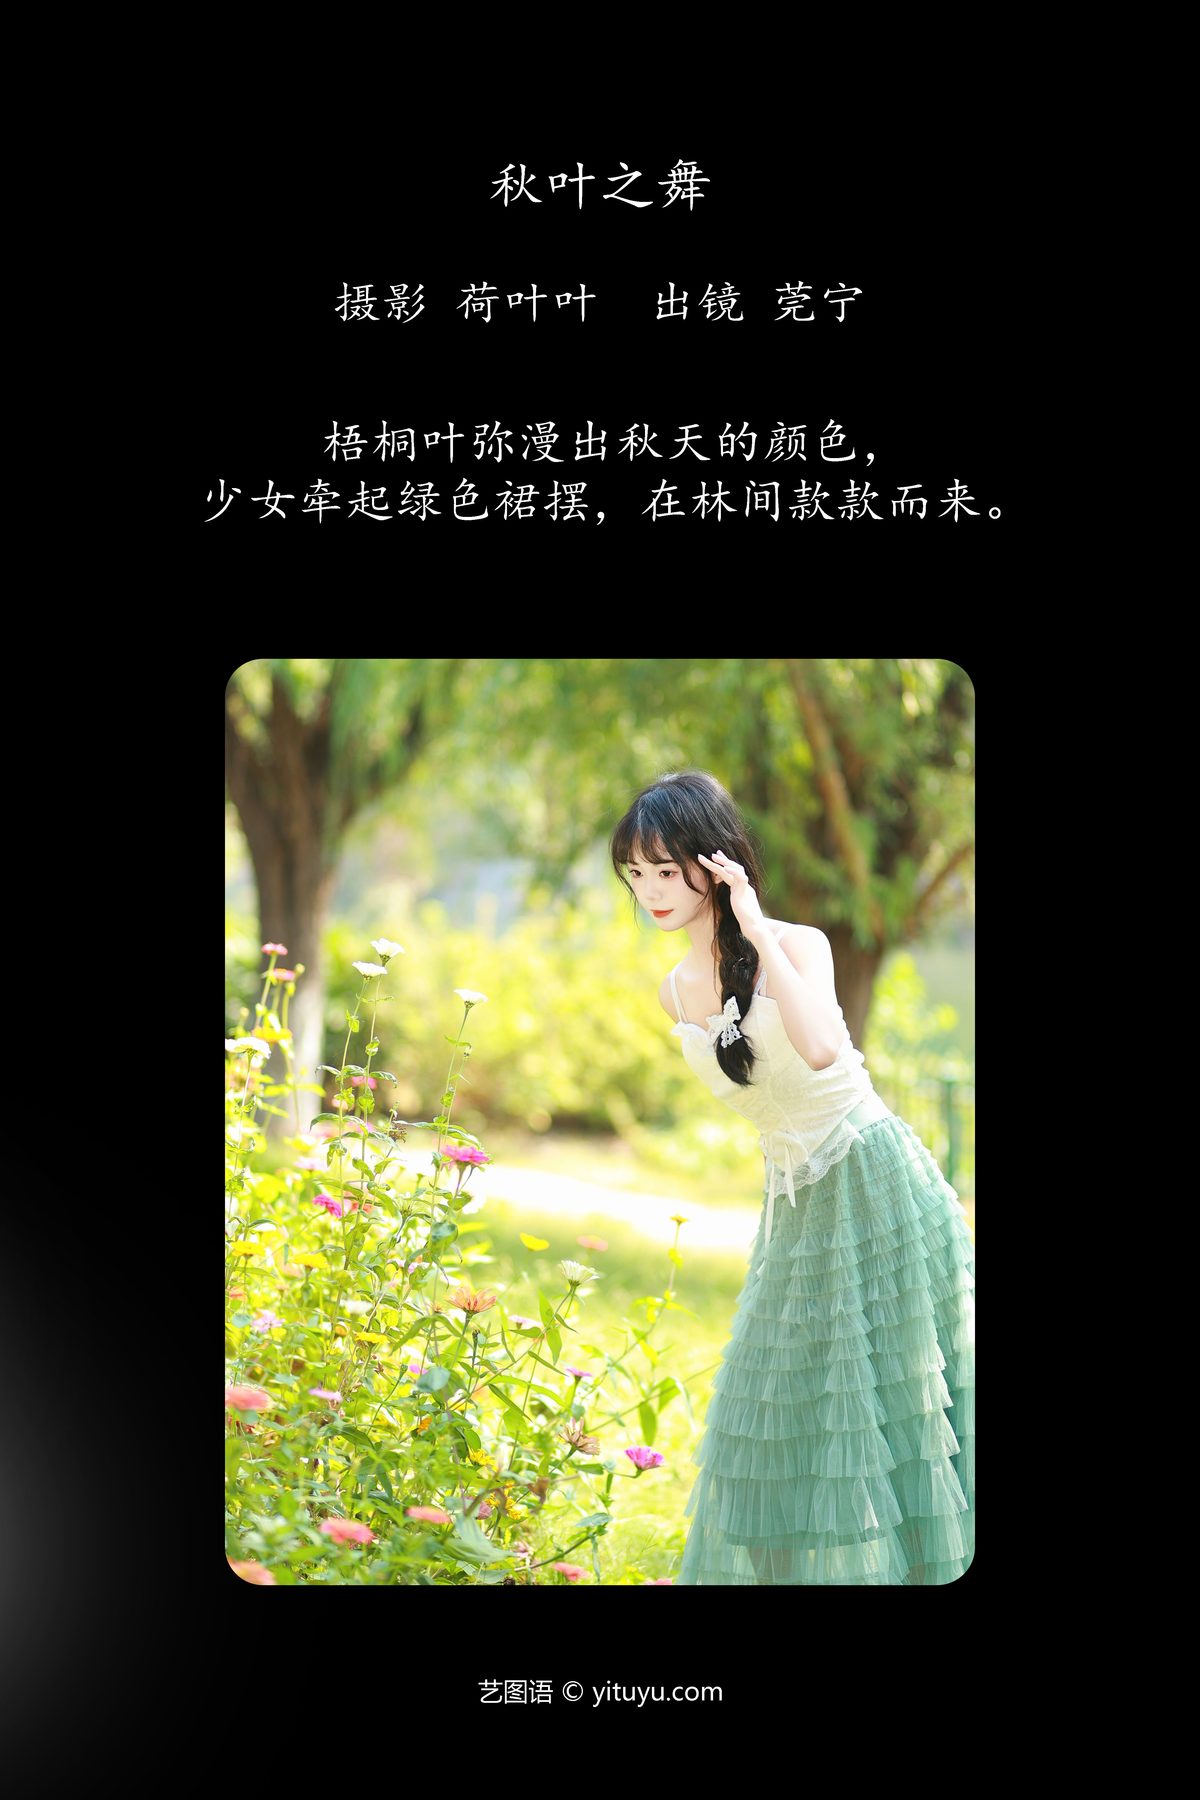 YiTuYu艺图语 Vol 5983 Guan Ning 0002 3800632345.jpg